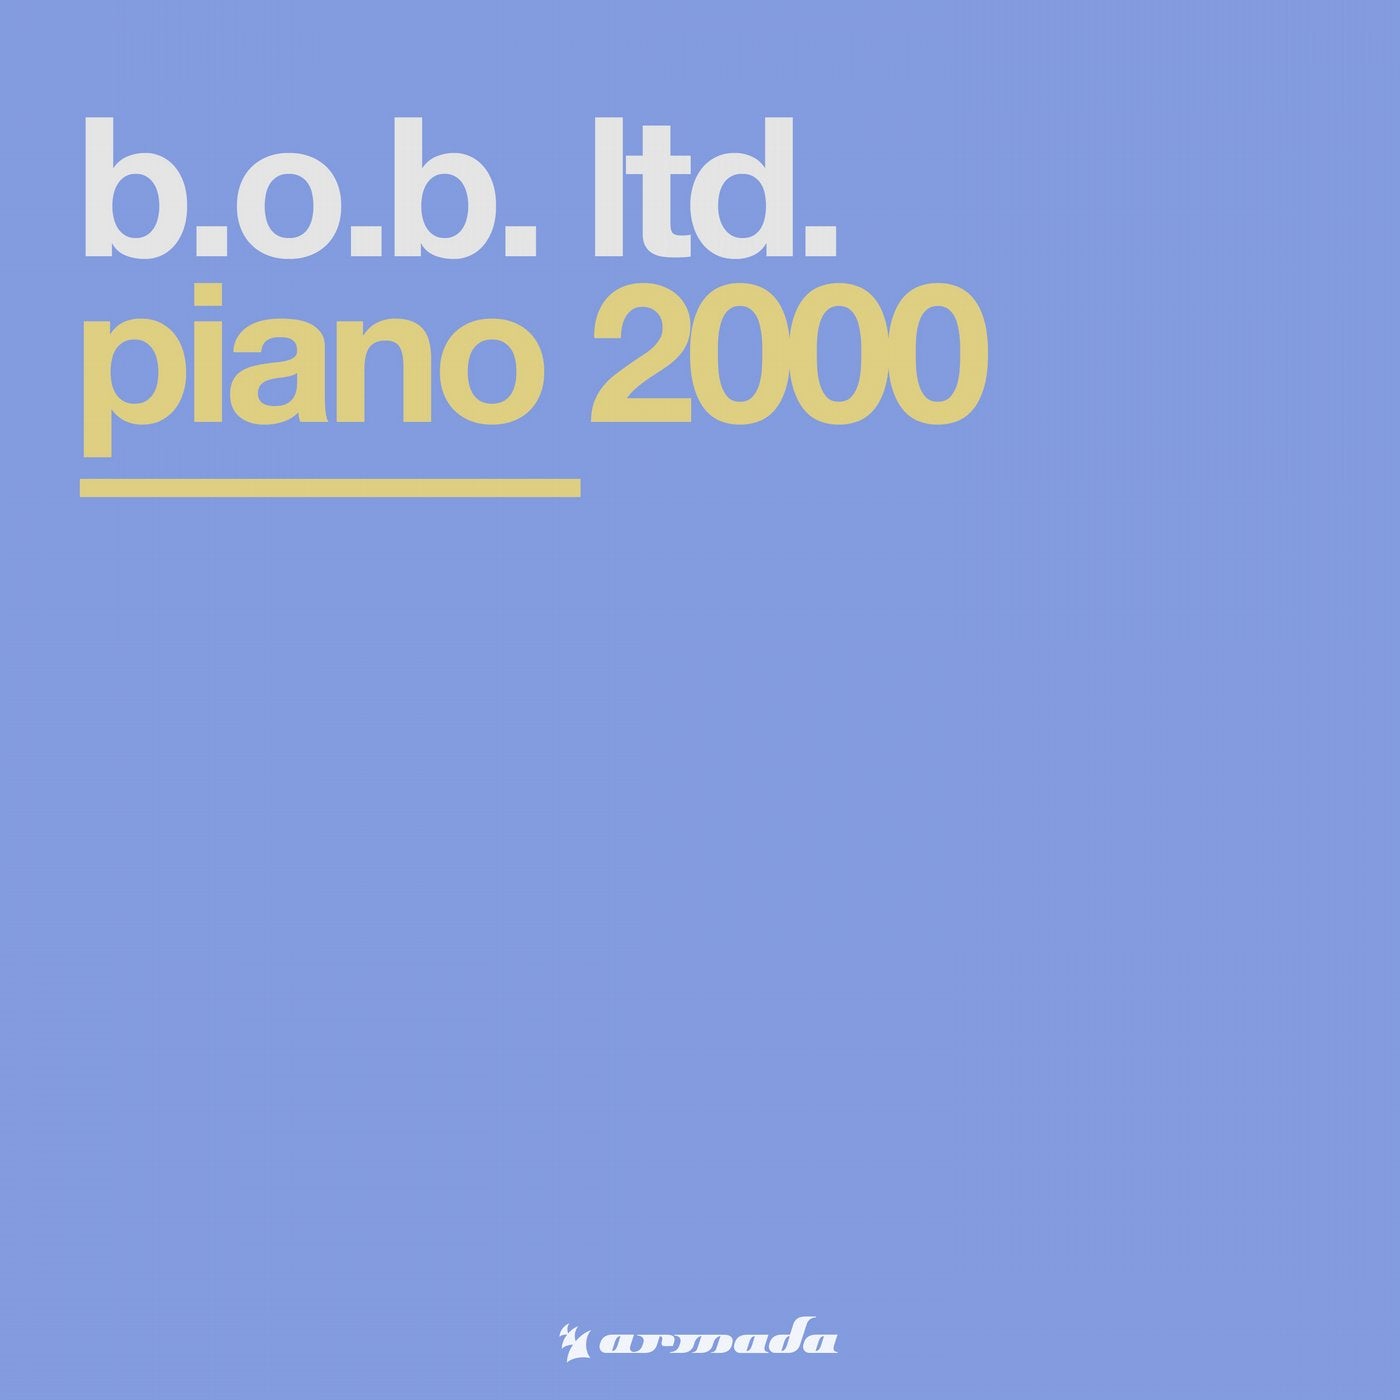 Piano 2000